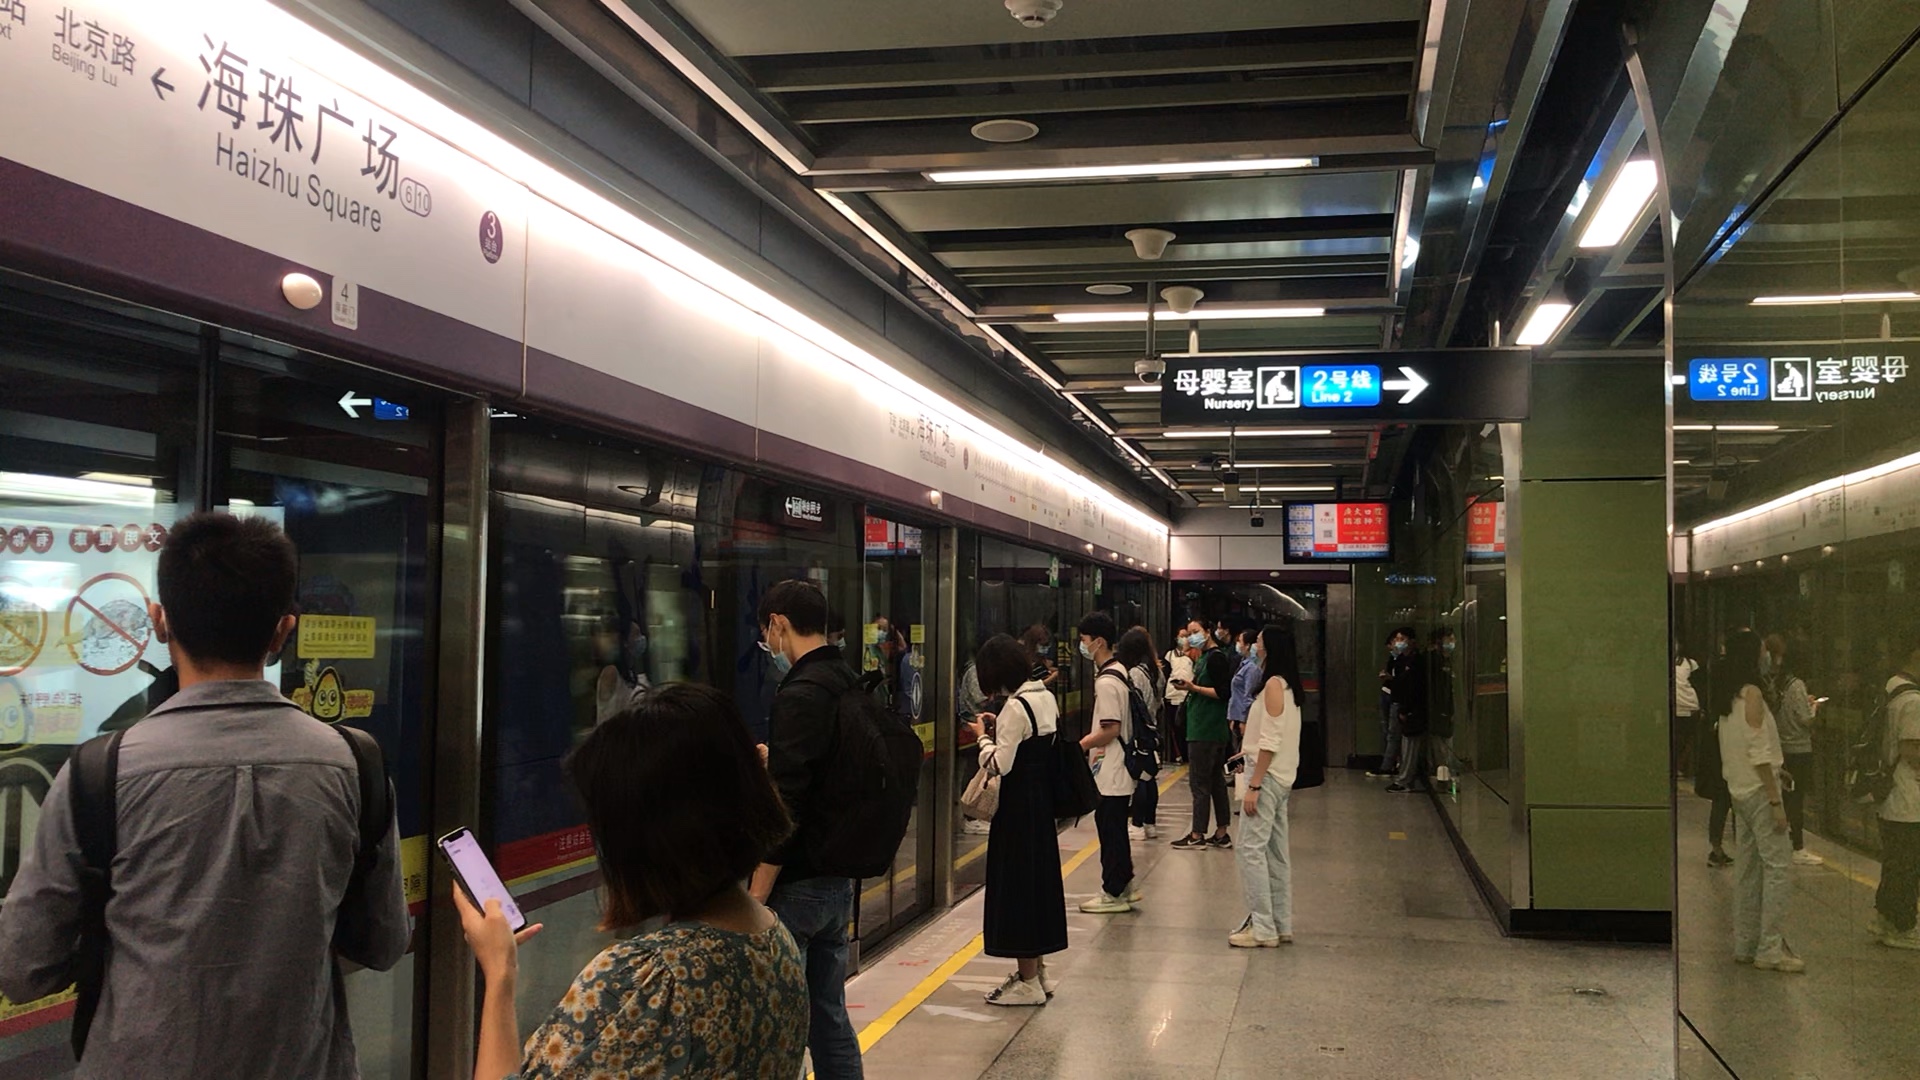 广州地铁6号线(香雪方向)本务l3型奥特曼海珠广场站进站